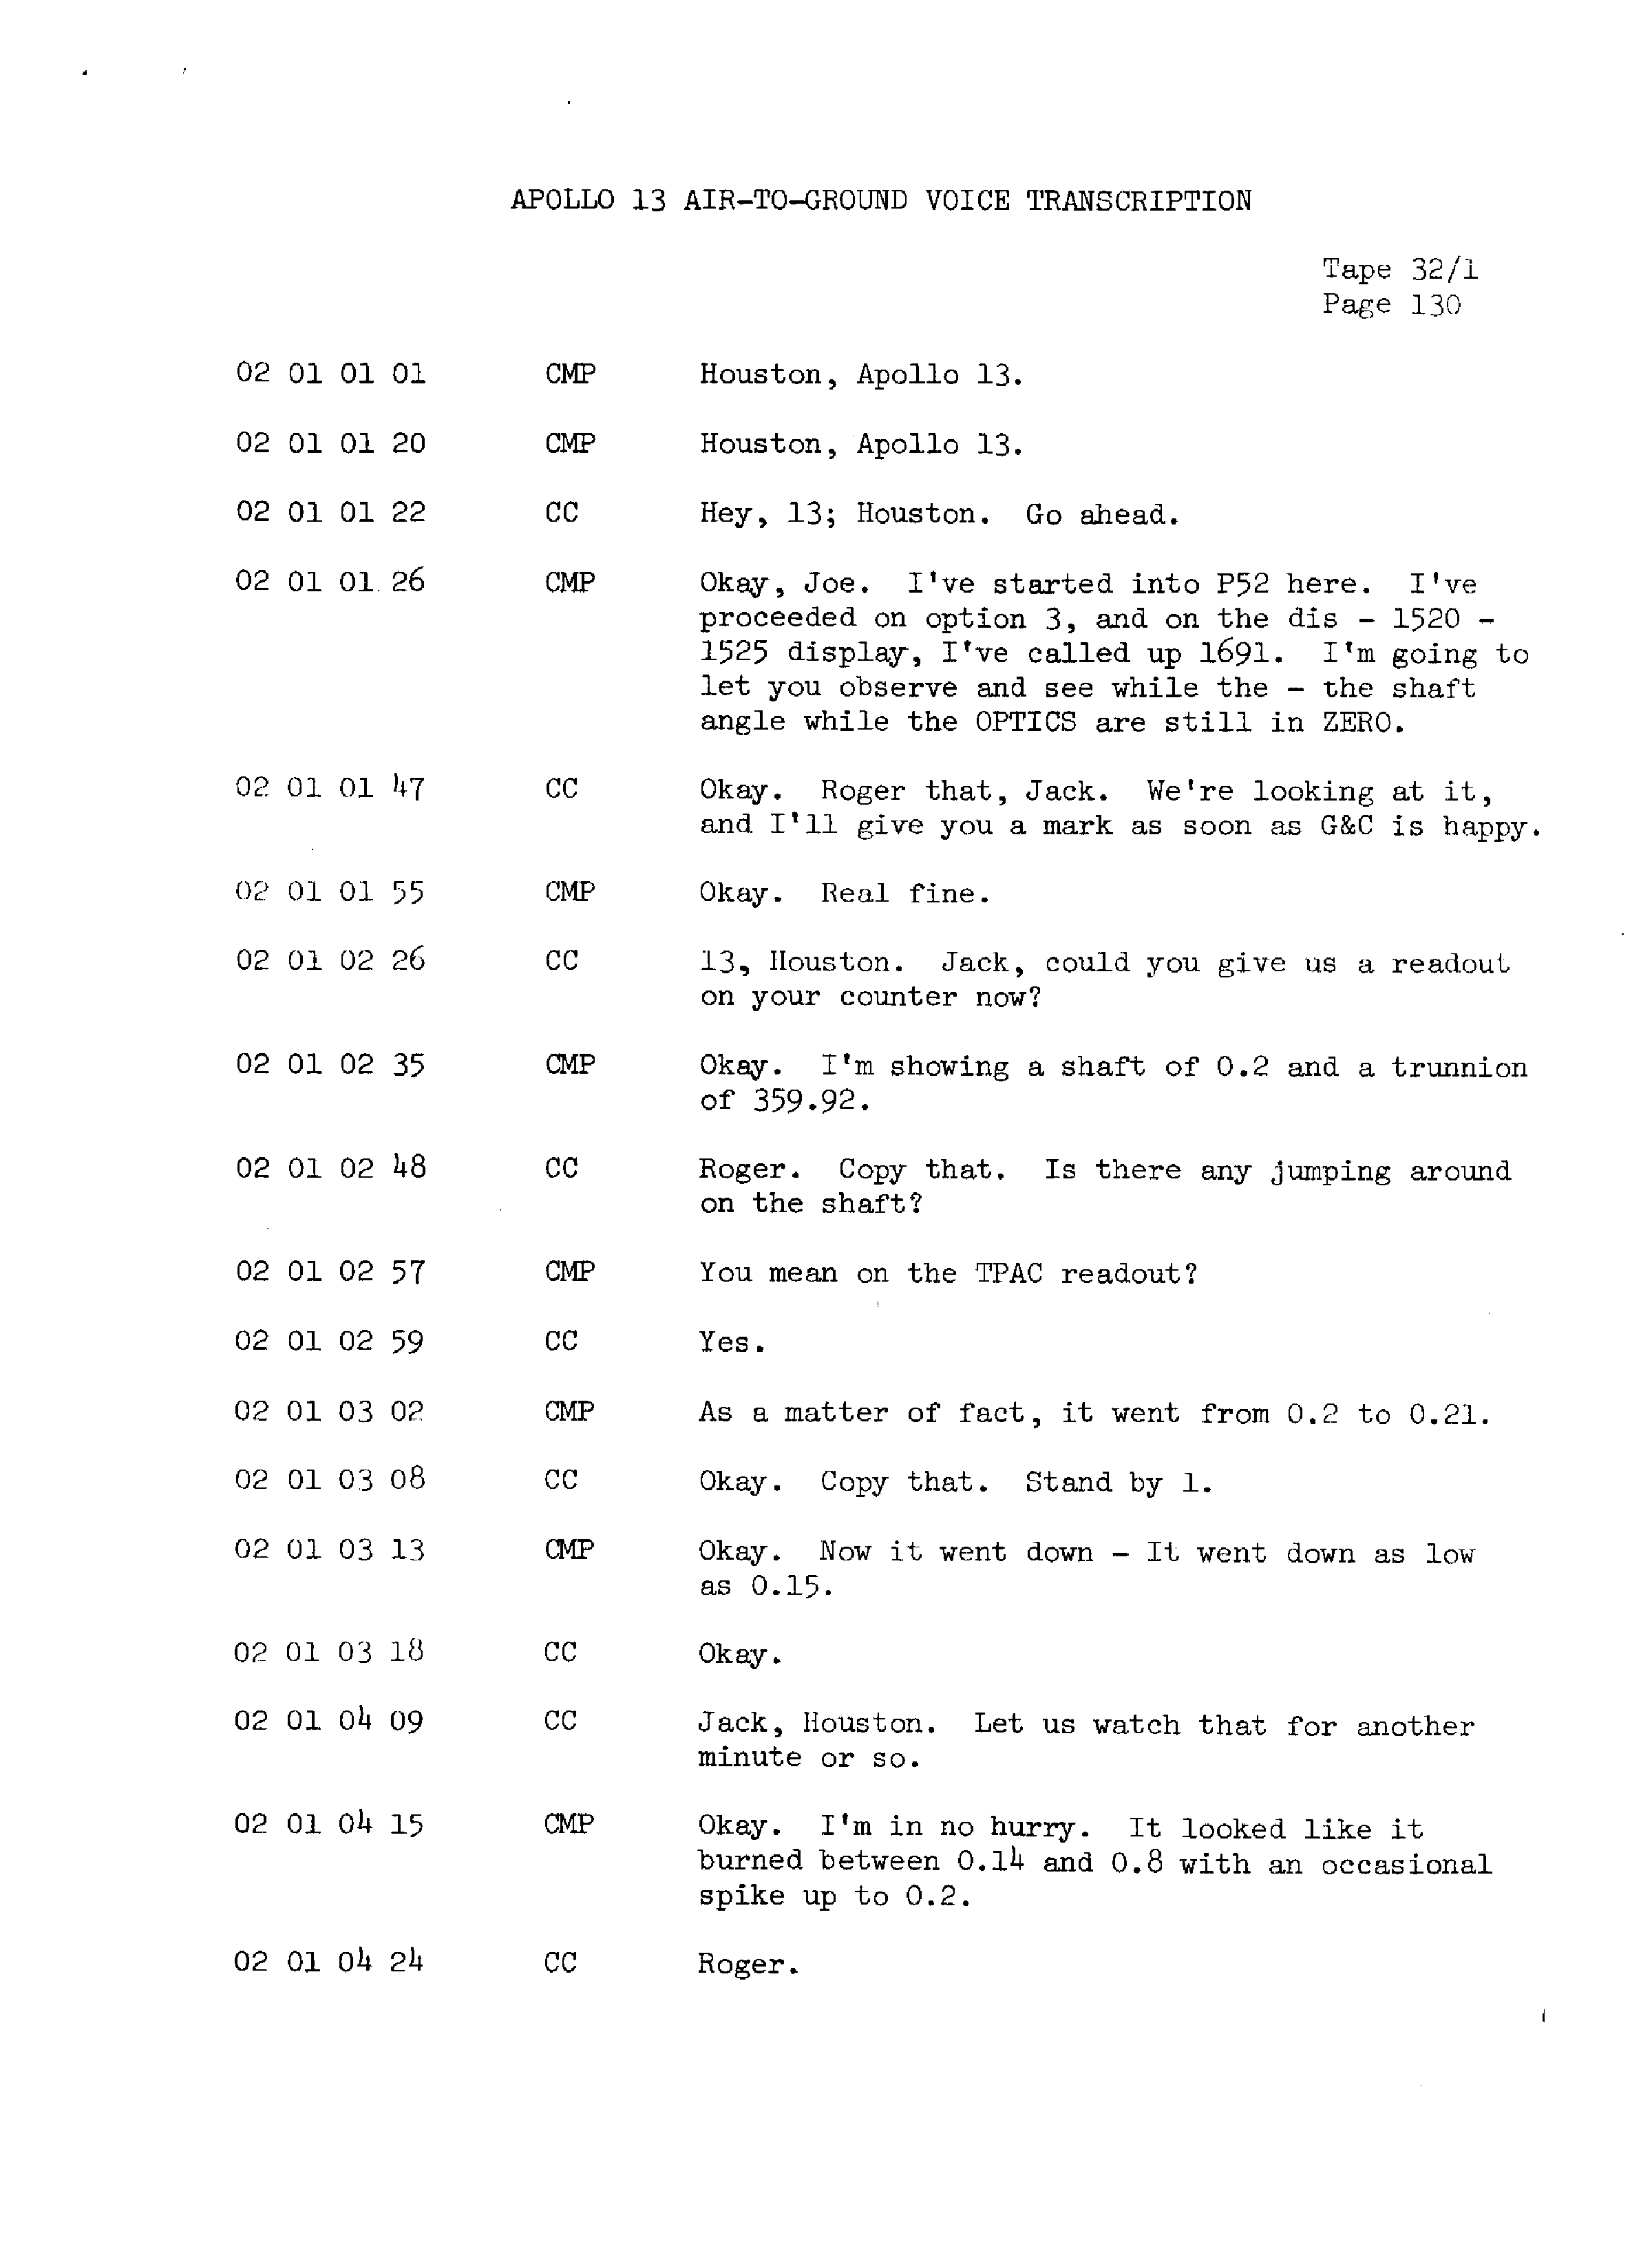 Page 137 of Apollo 13’s original transcript